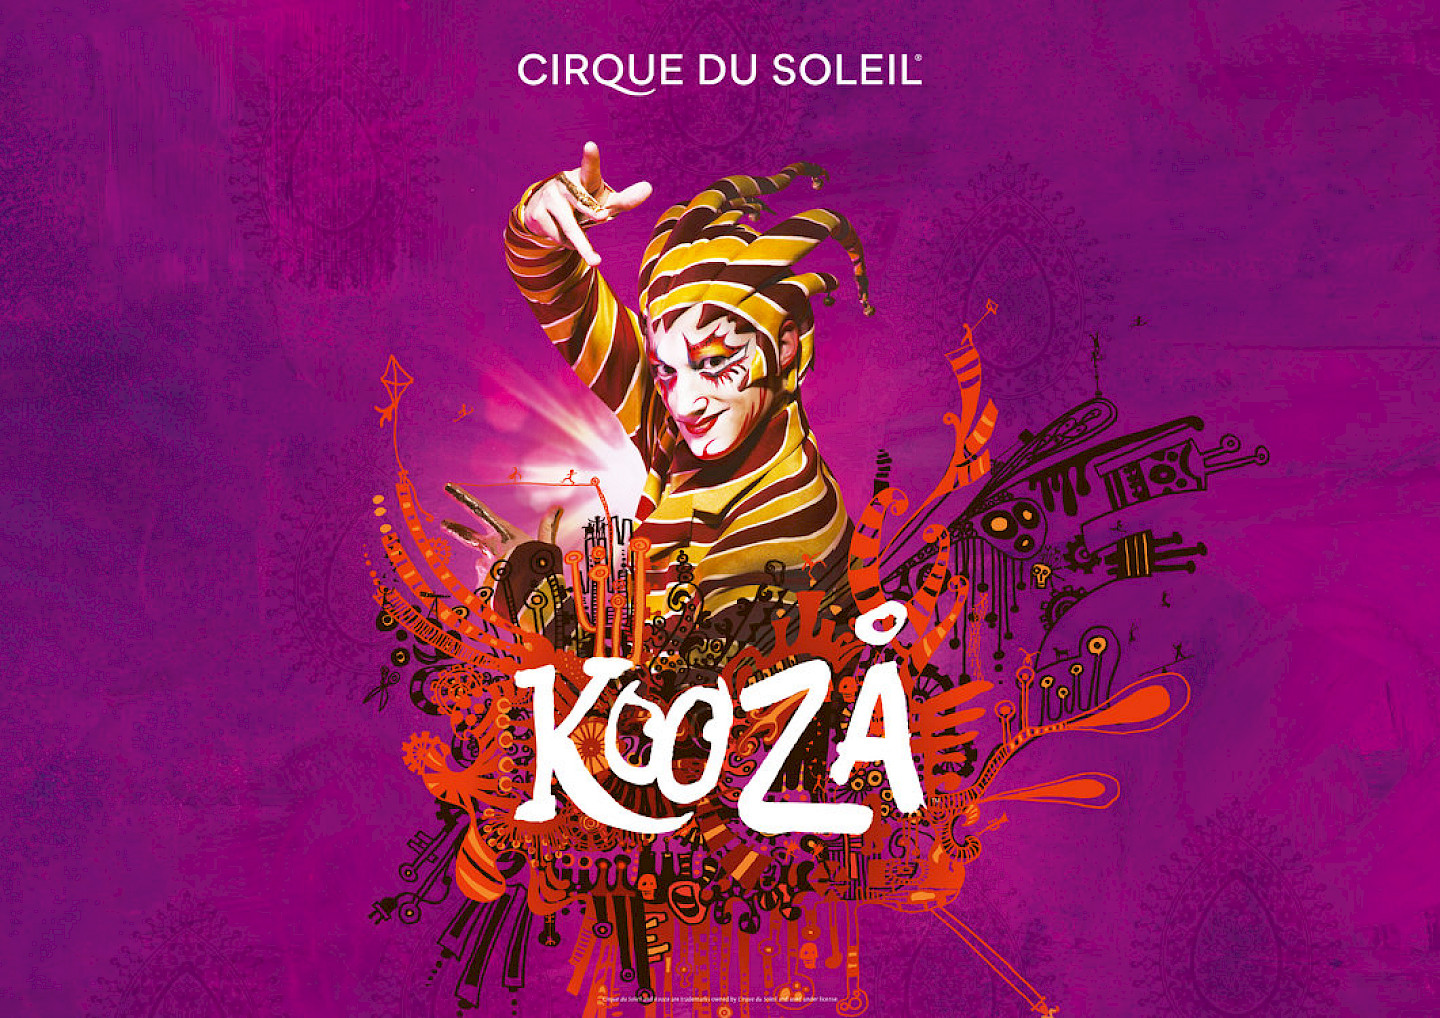 ABGESAGT: Cirque du Soleil – Kooza